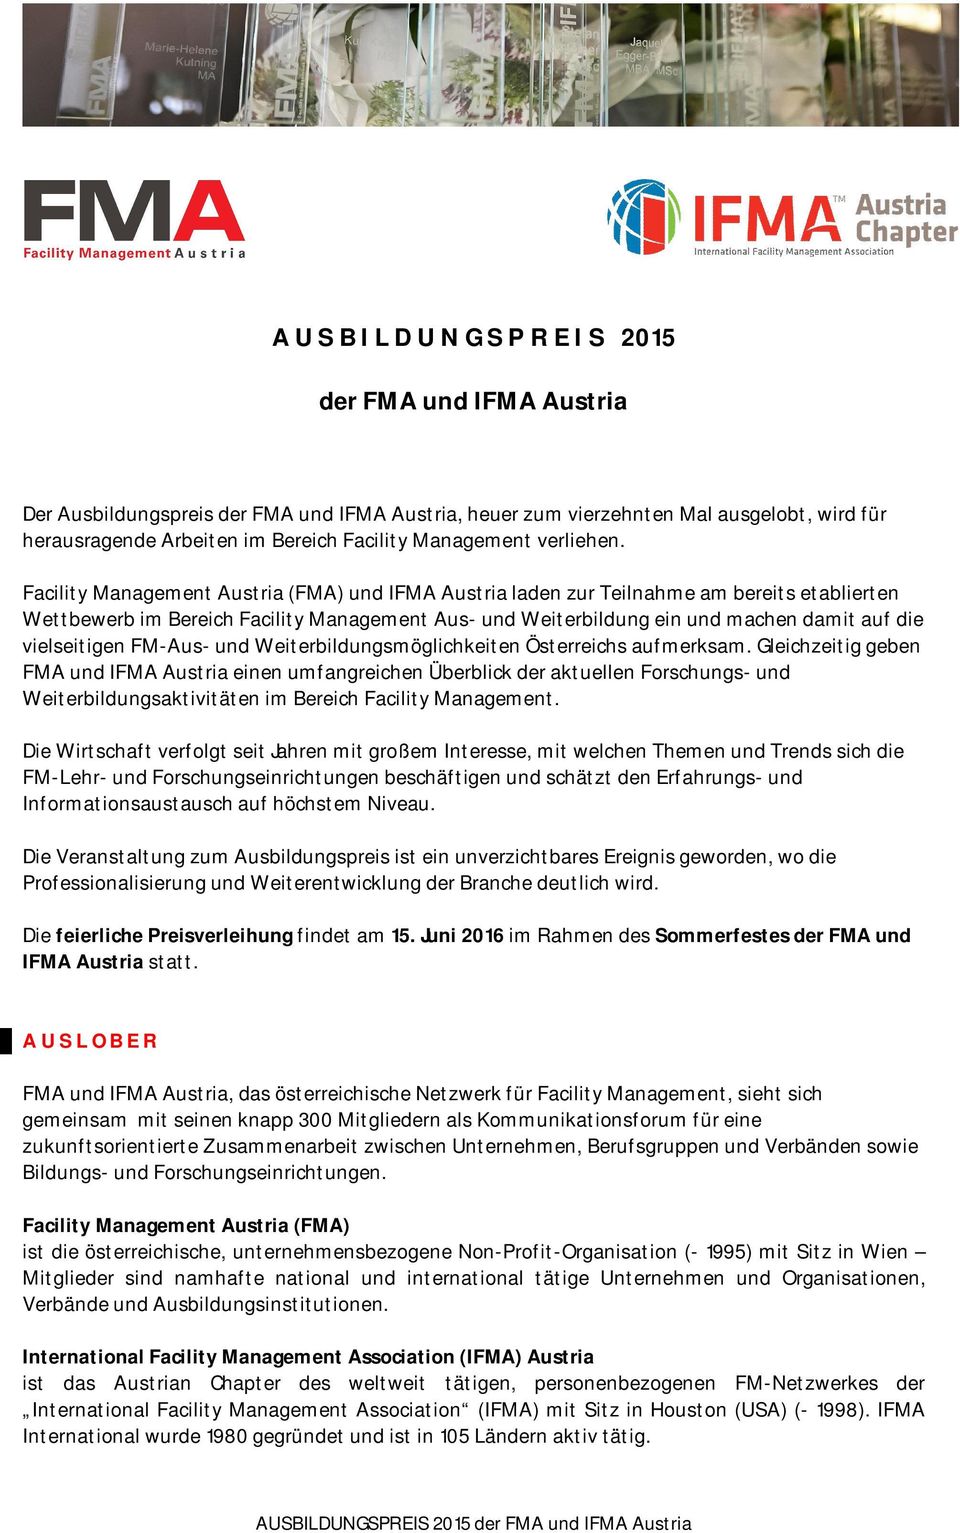 Facility Management Austria (FMA) und IFMA Austria laden zur Teilnahme am bereits etablierten Wettbewerb im Bereich Facility Management Aus- und Weiterbildung ein und machen damit auf die